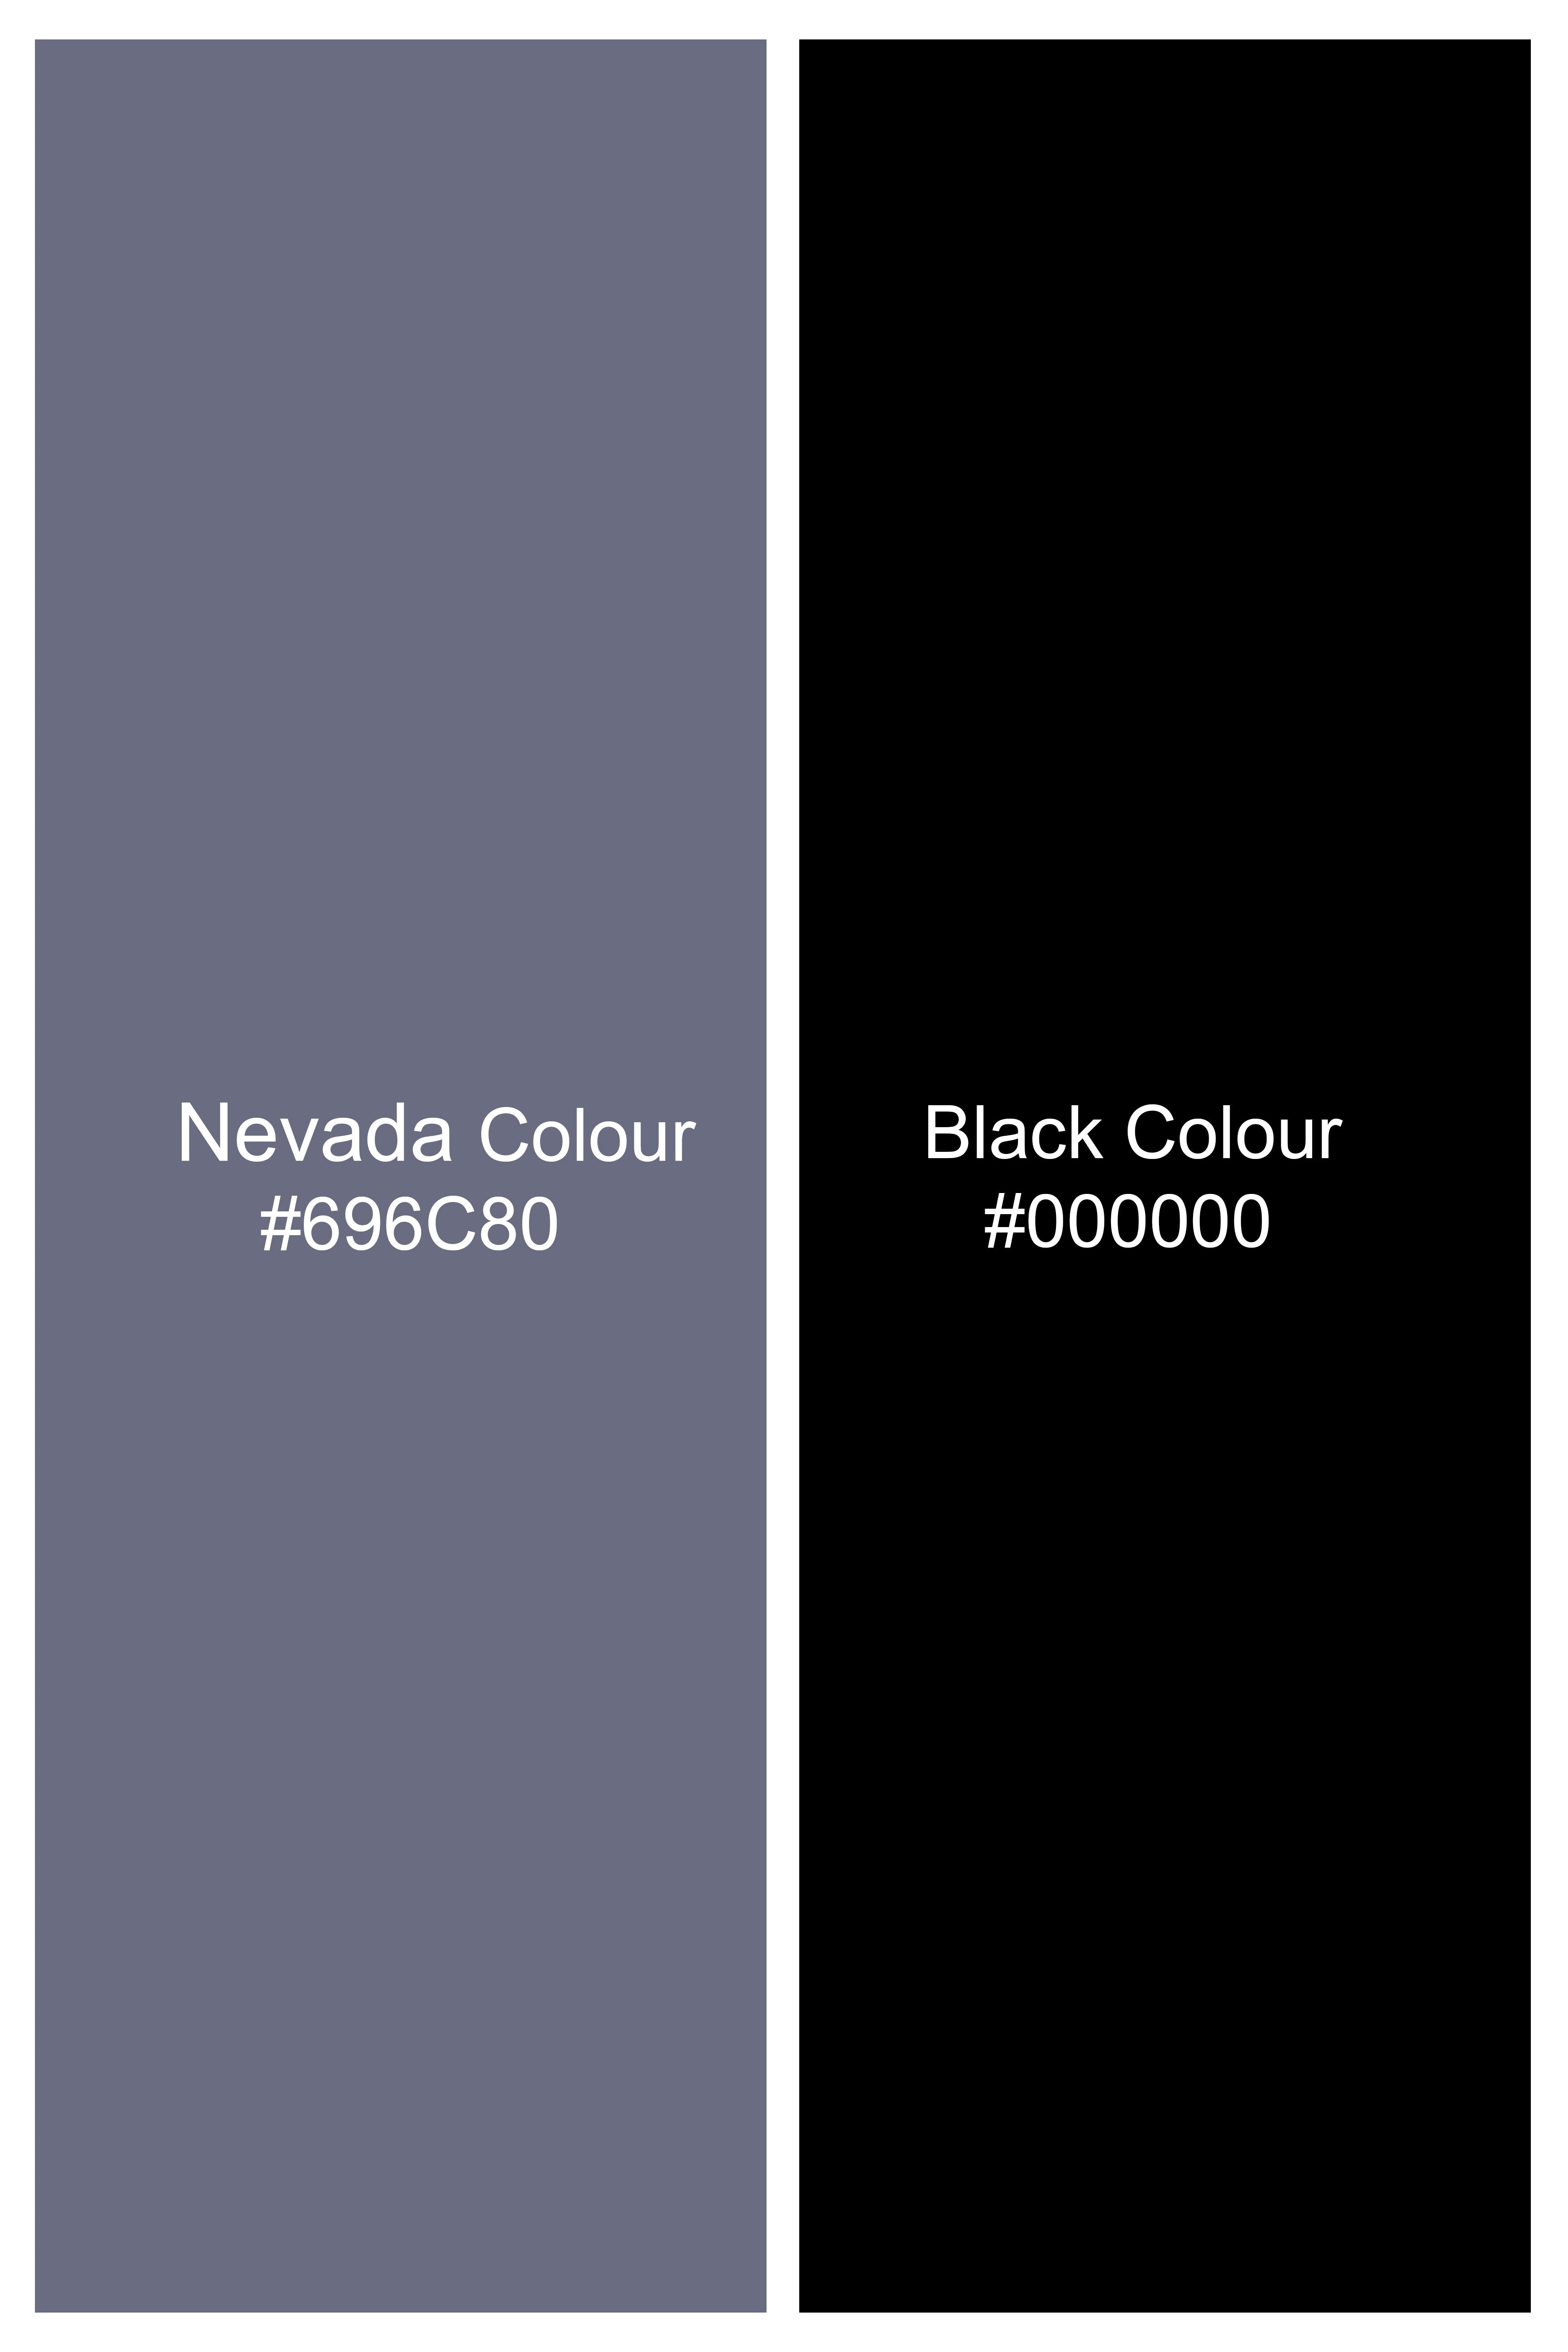 Nevada Gray and Black Printed Twill Premium Cotton Boxer